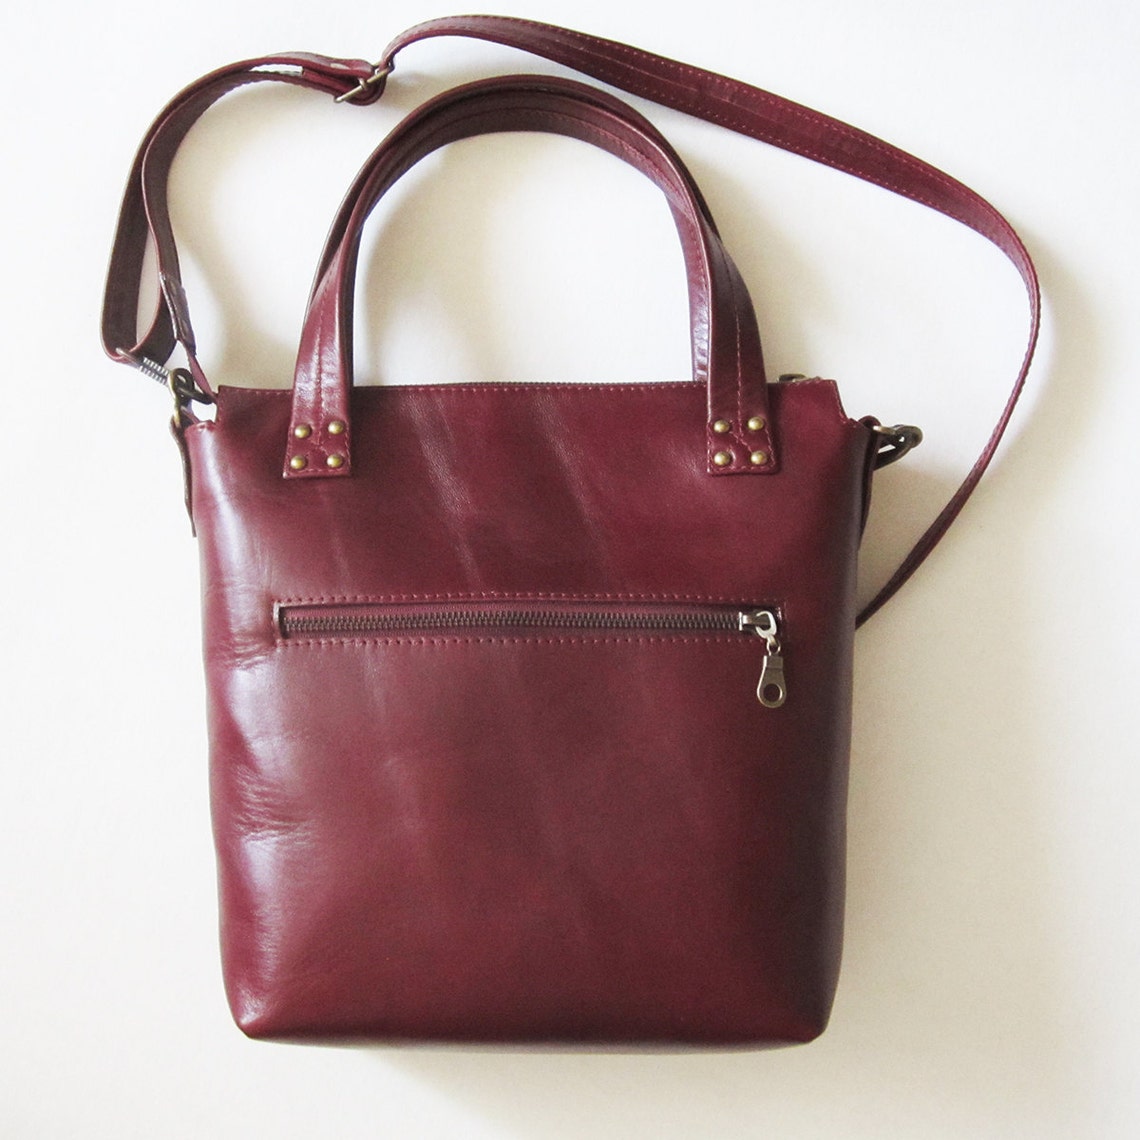 Leather Shoulder Bag Red Wine Colour Women Handbag Leather Tote Bag ...